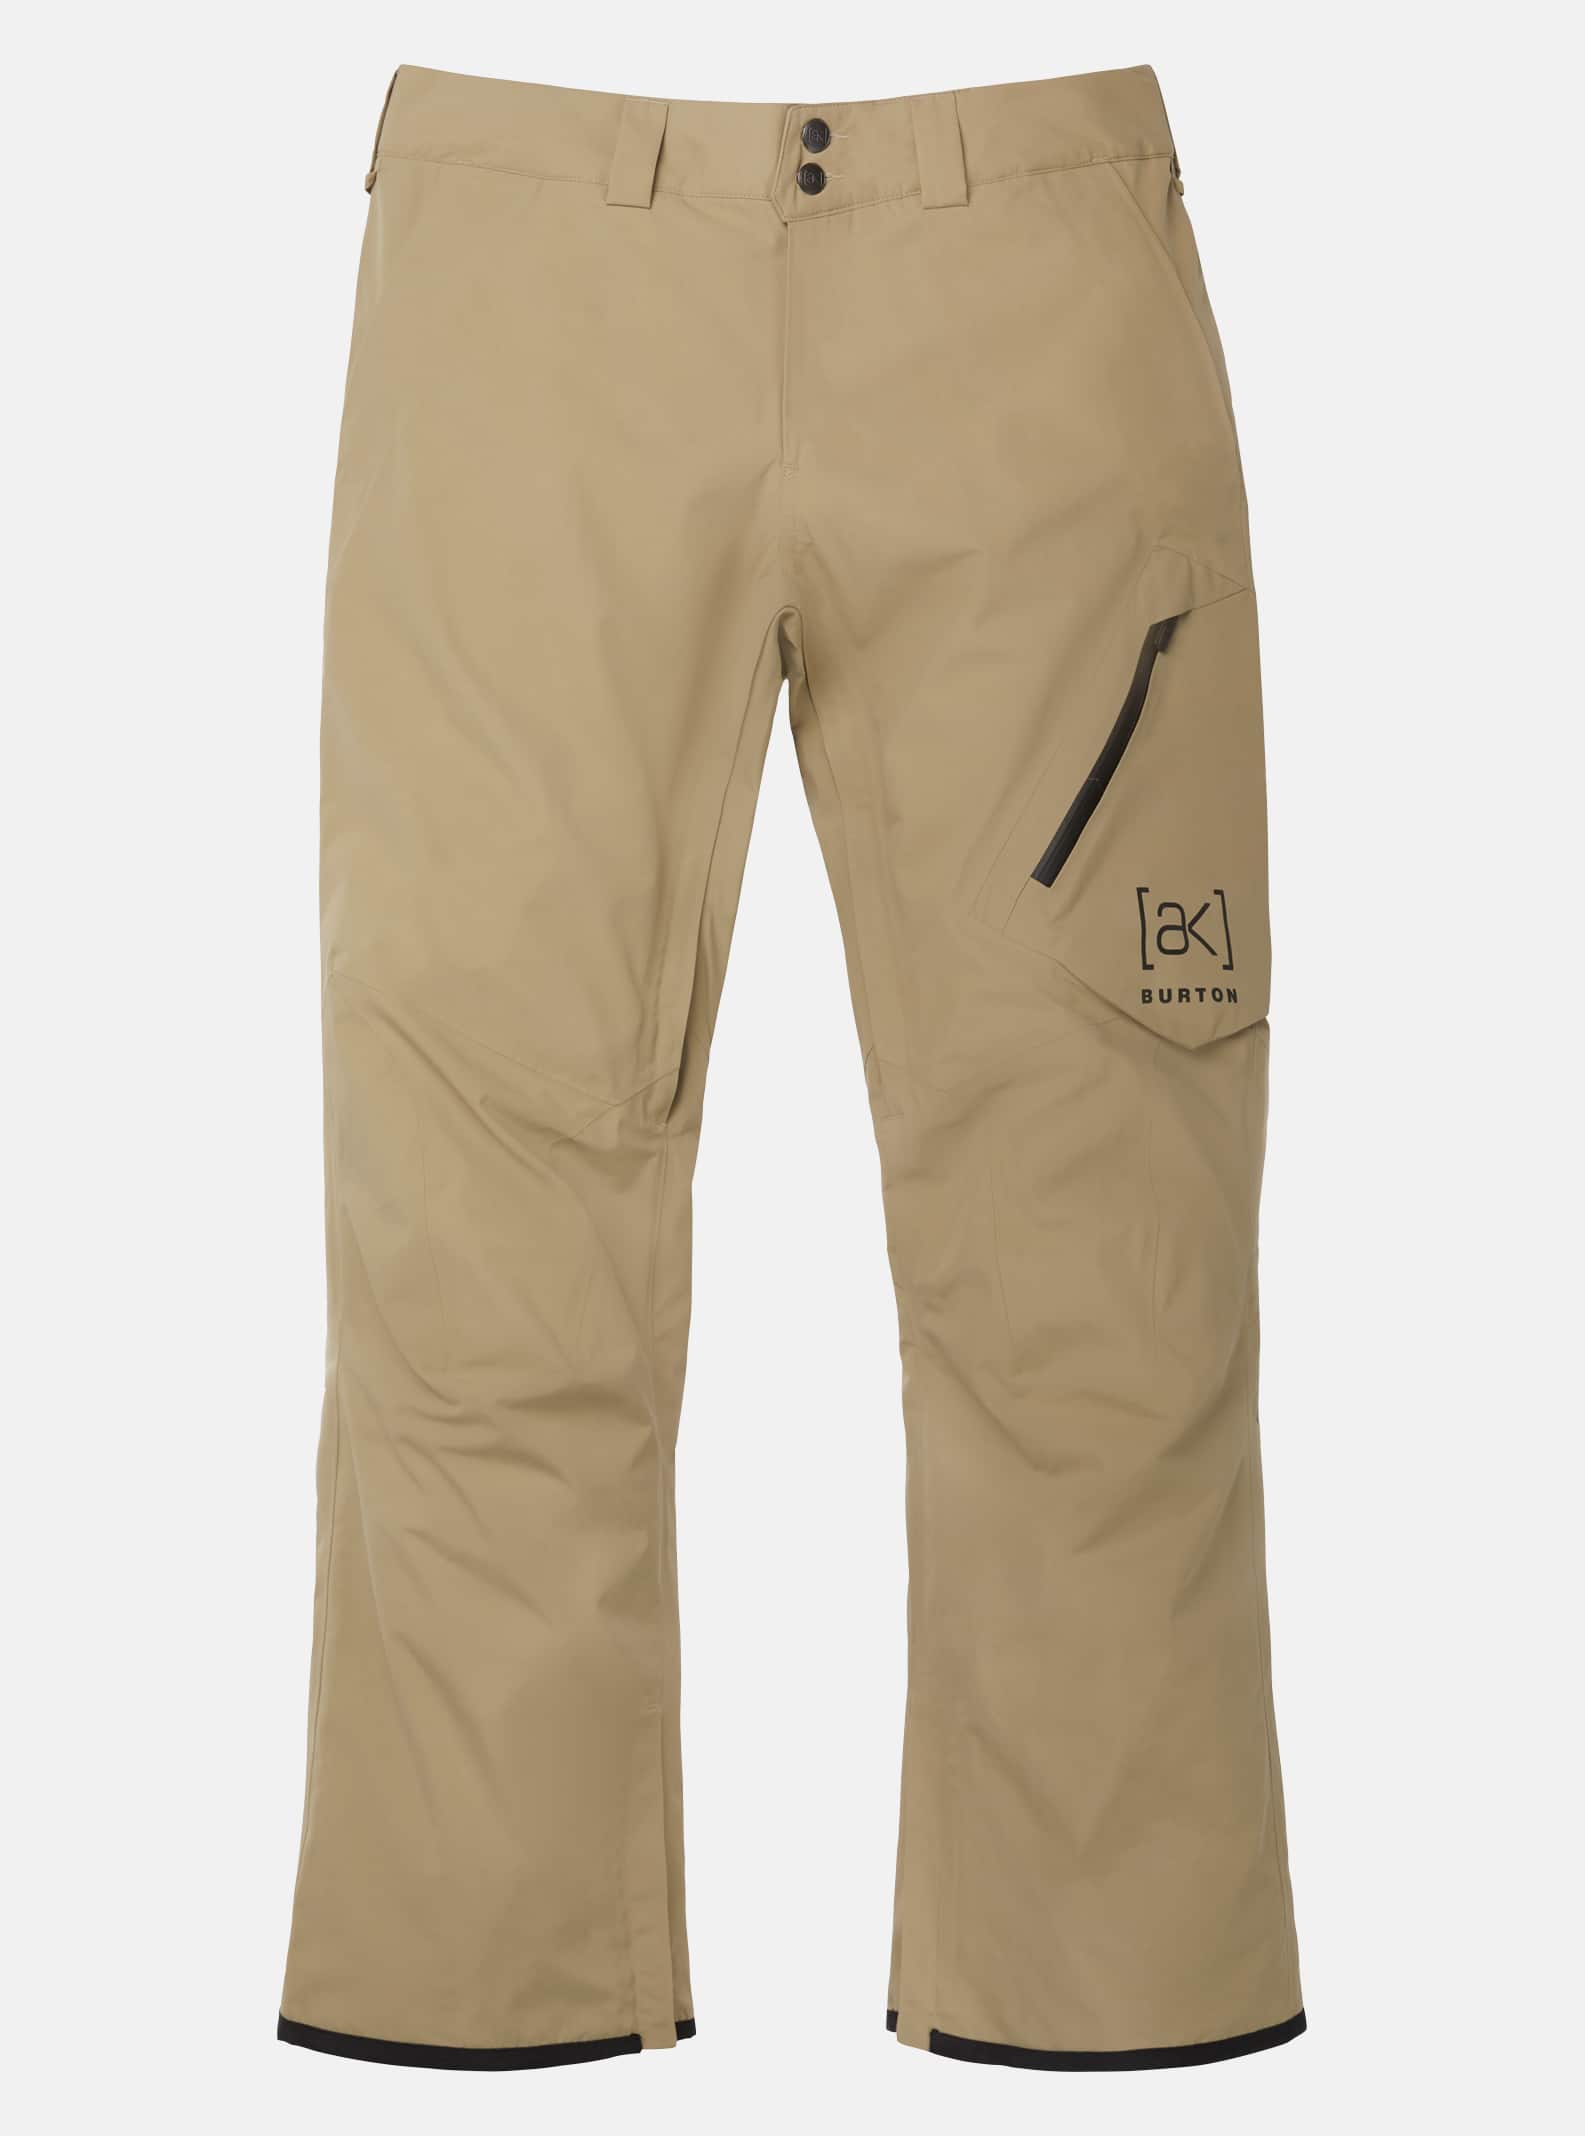 Men's Burton [ak] Cyclic GORE‑TEX 2L Pants (Tall)